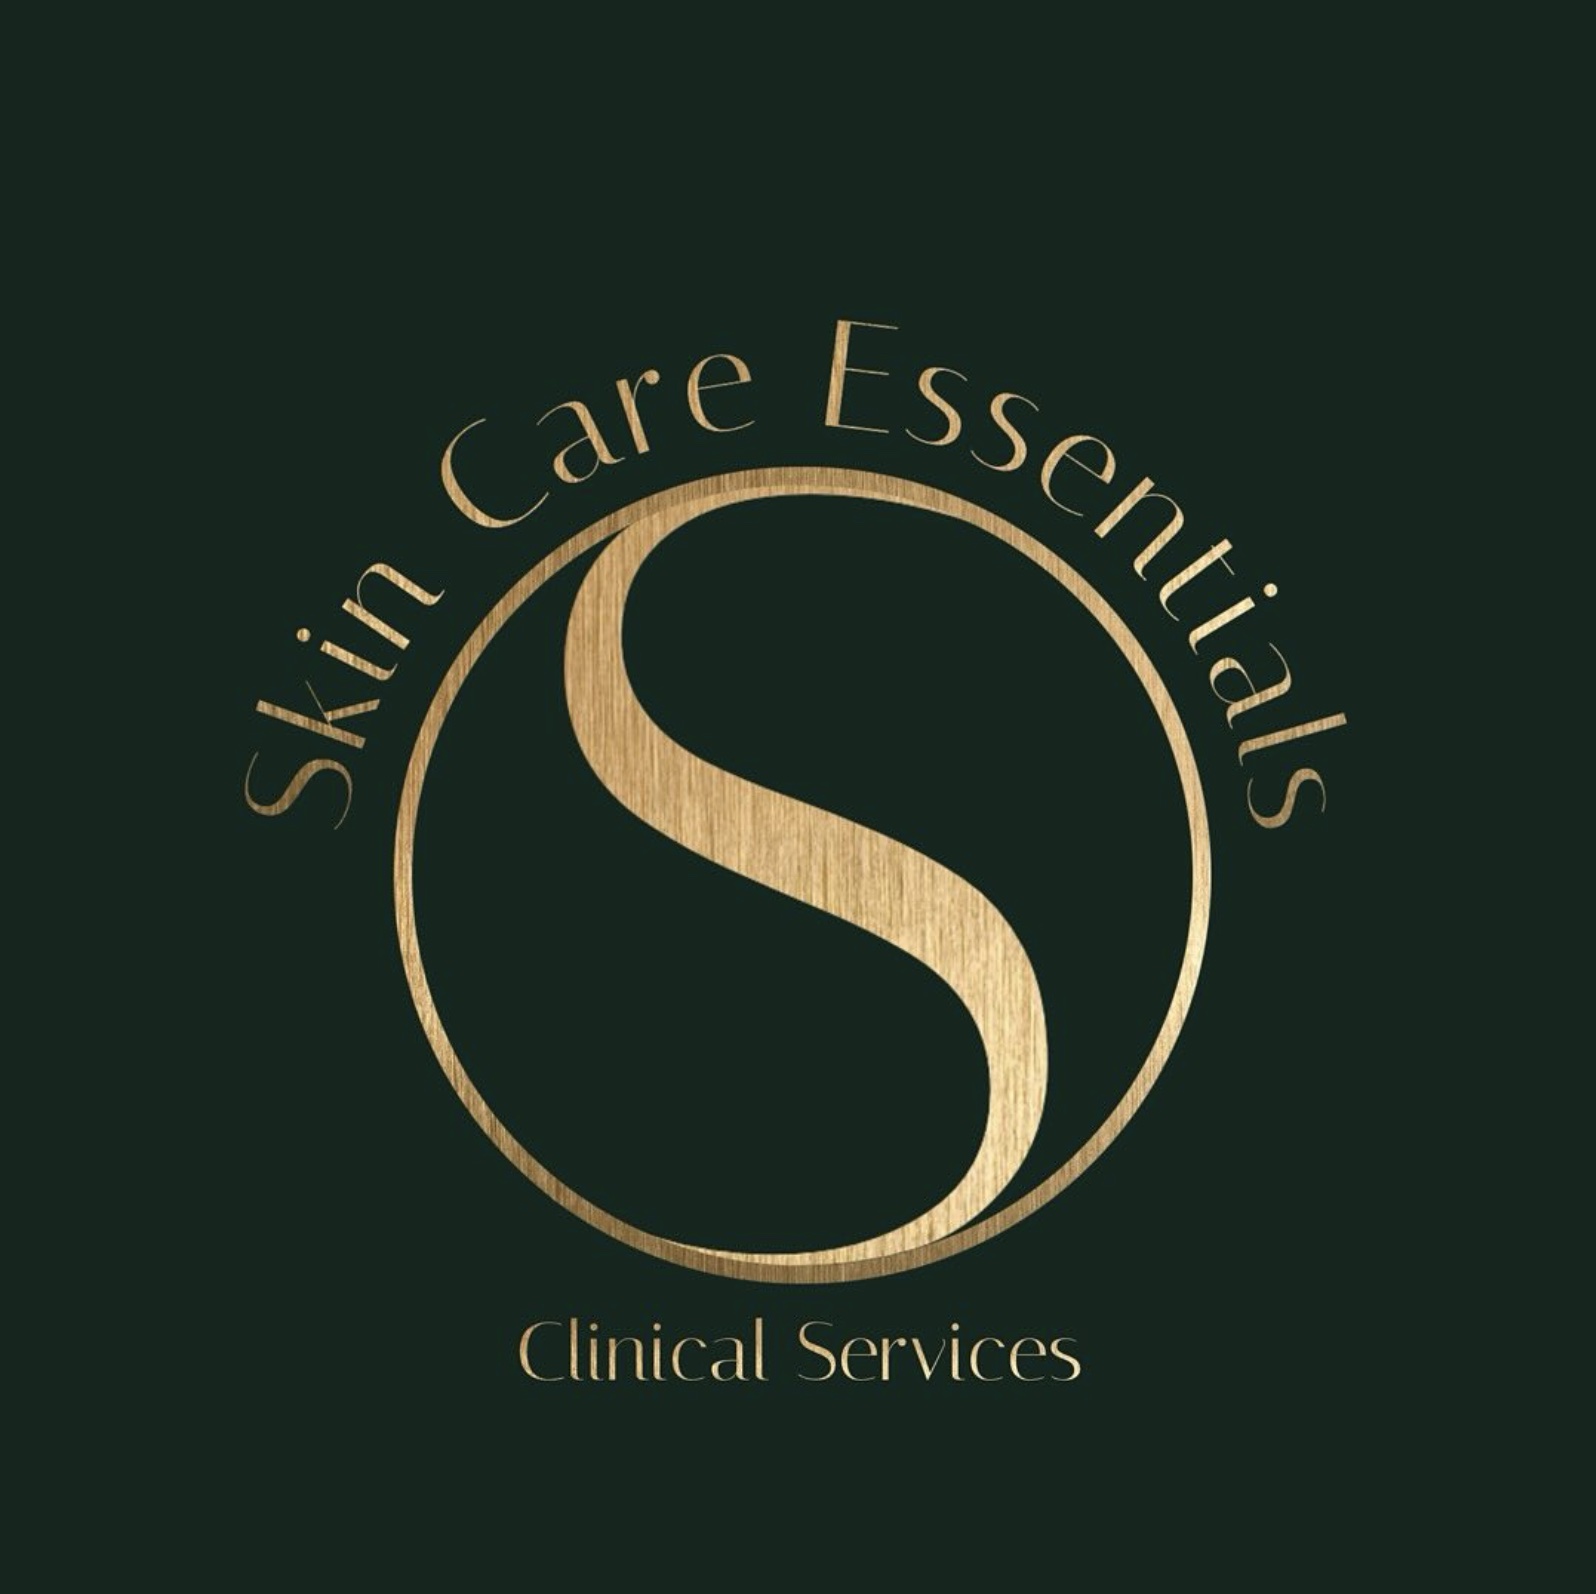 skincare-essentials-logo-clinical-services